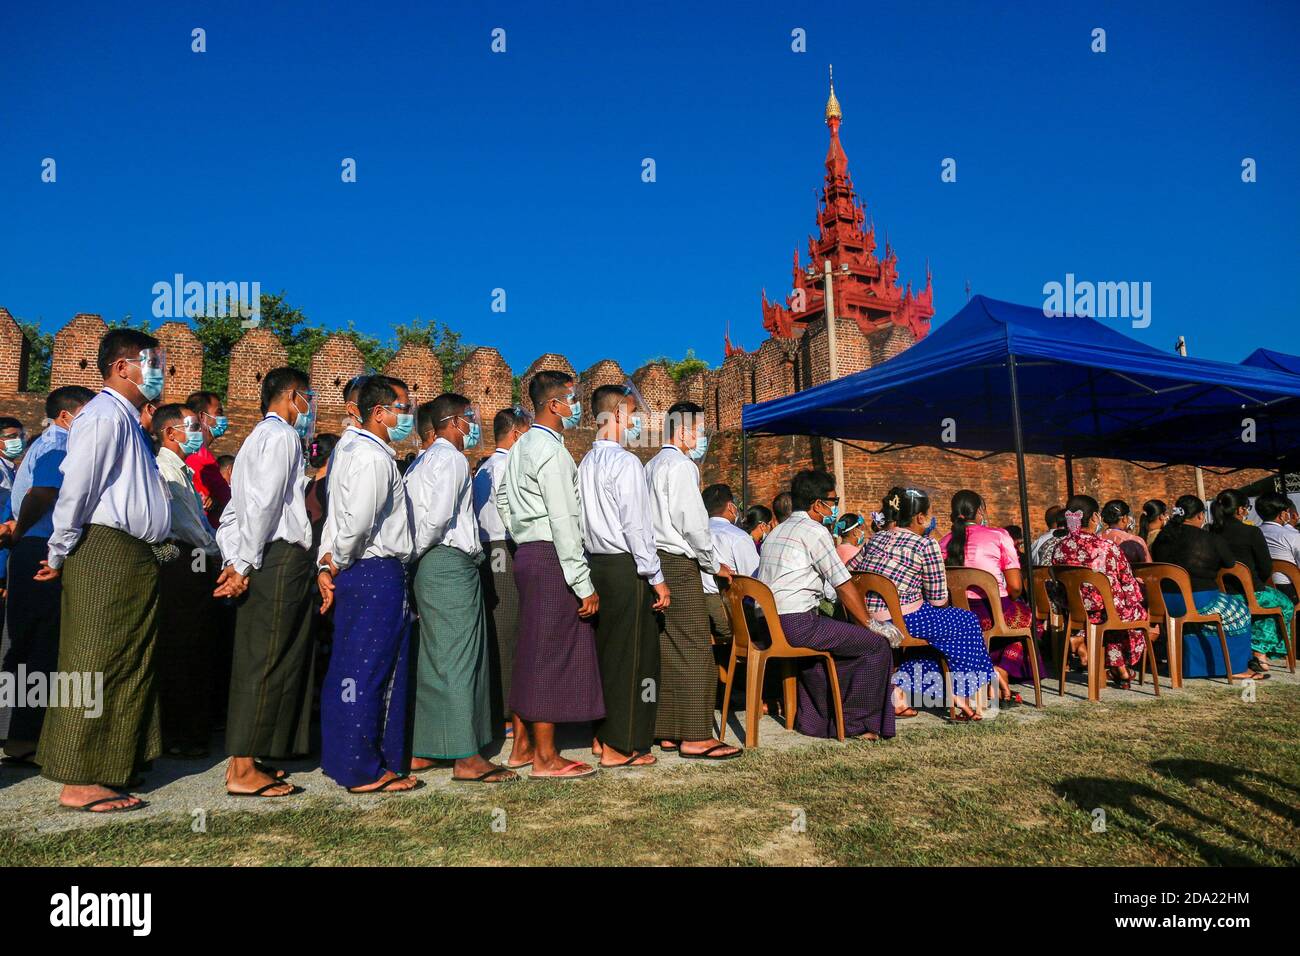 Les membres de la famille militaire vêtu de masques faciaux attendent devant le palais pour voter.les citoyens du Myanmar ont voté lors de la deuxième élection démocratique depuis la fin du régime militaire, la Ligue nationale pour la démocratie (NLD) Aung San Suu Kyi s'attendait à remporter l'élection. Banque D'Images